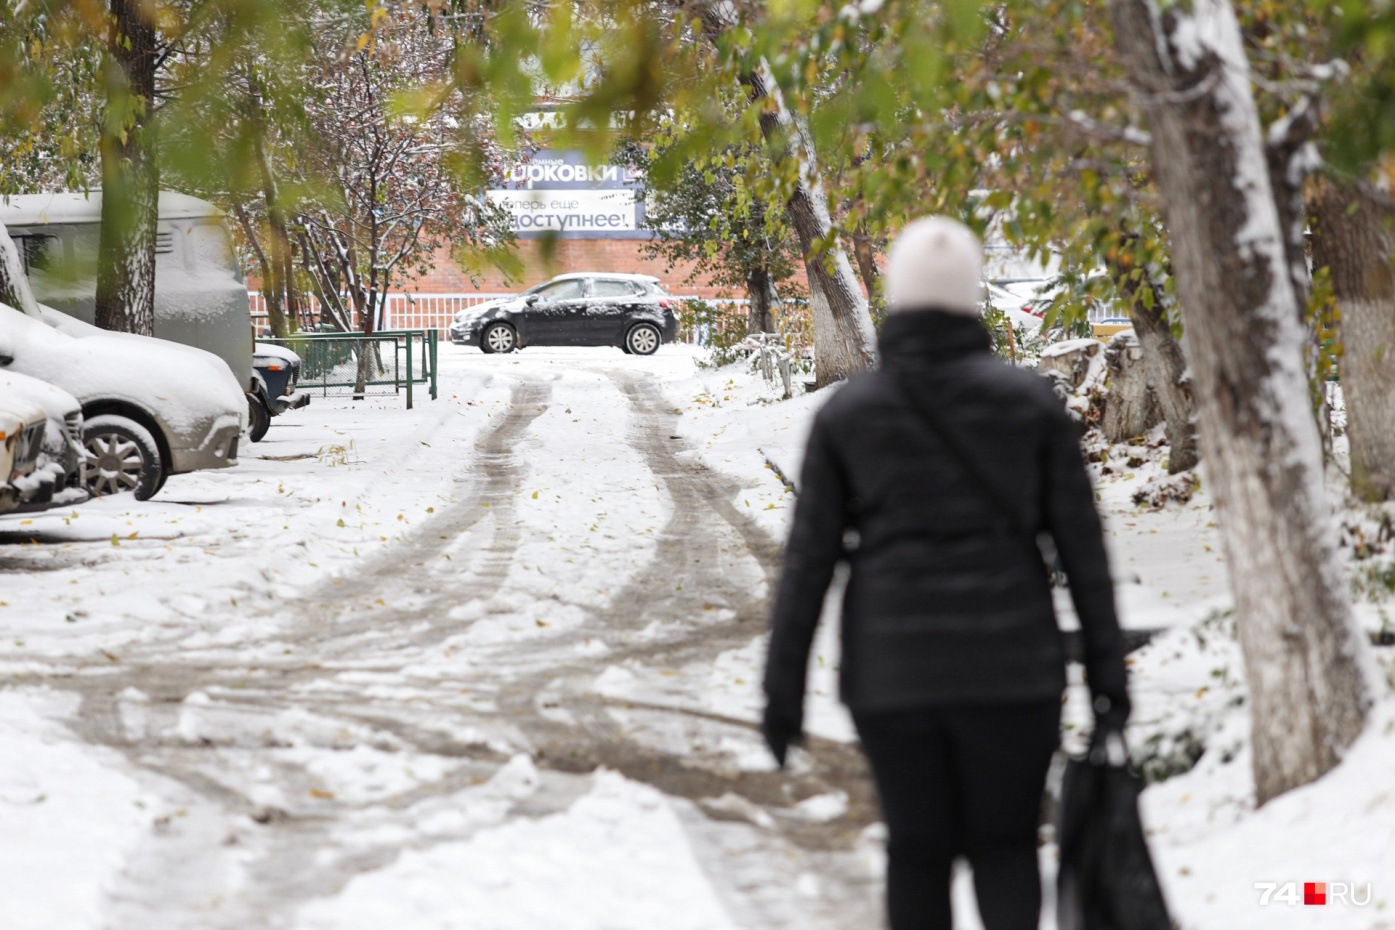 Плохая уборка снега в Челябинске стала поводом для возбуждения дела